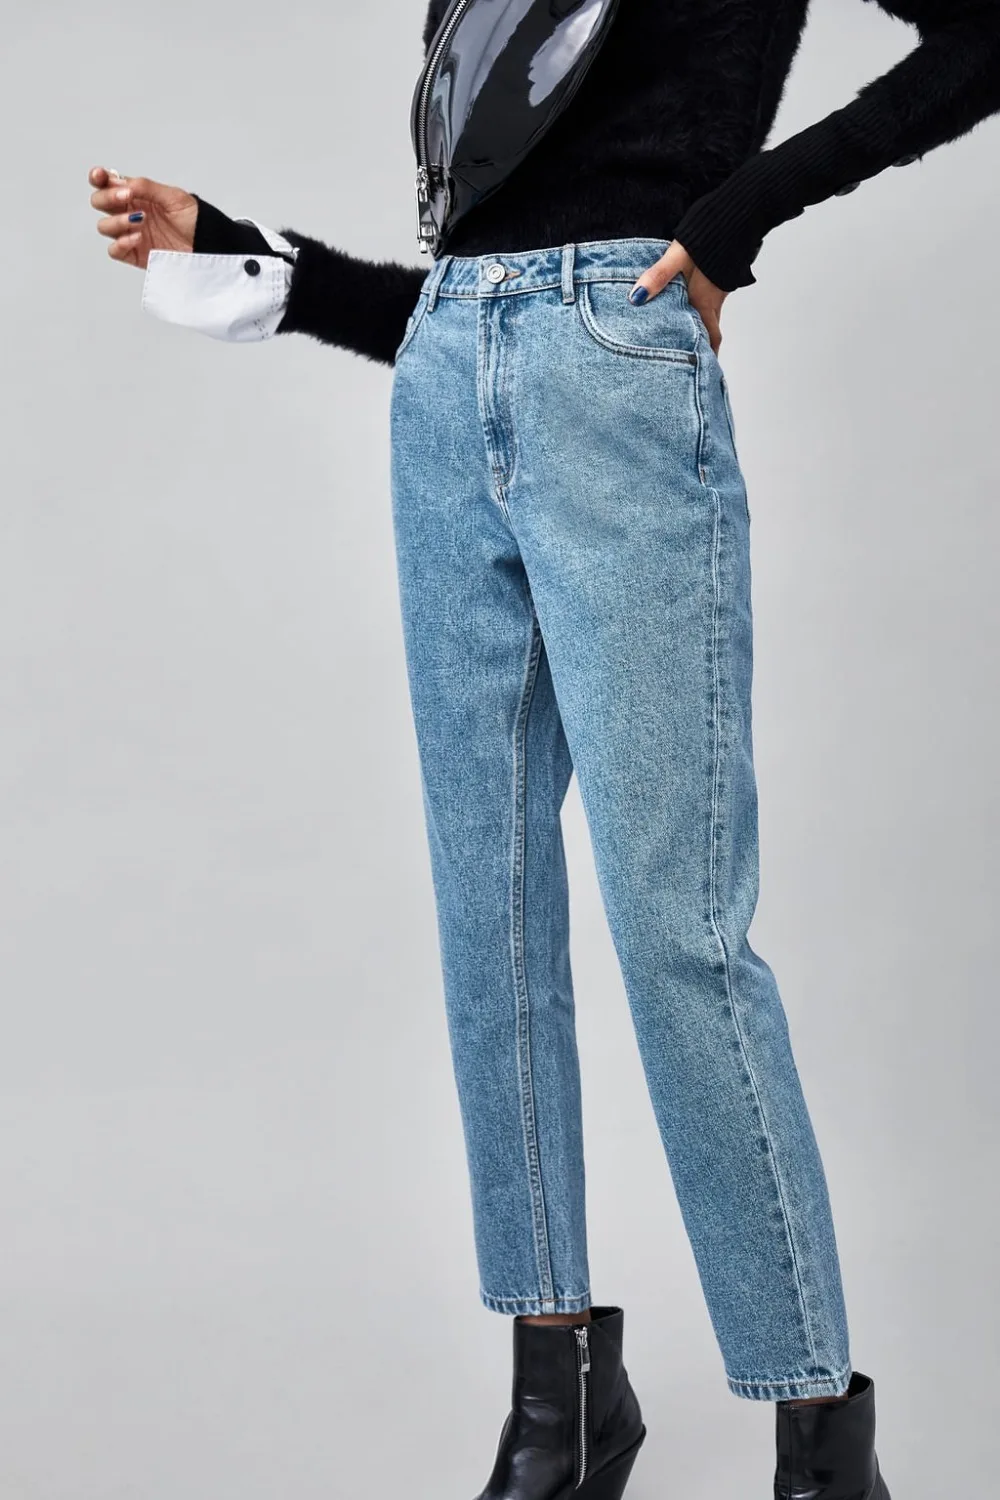 Увядшие новые джинсы для женщин, уличные винтажные джинсы для мам, джинсовые штаны-шаровары, хлопок, рваные джинсы с высокой талией для женщин размера плюс